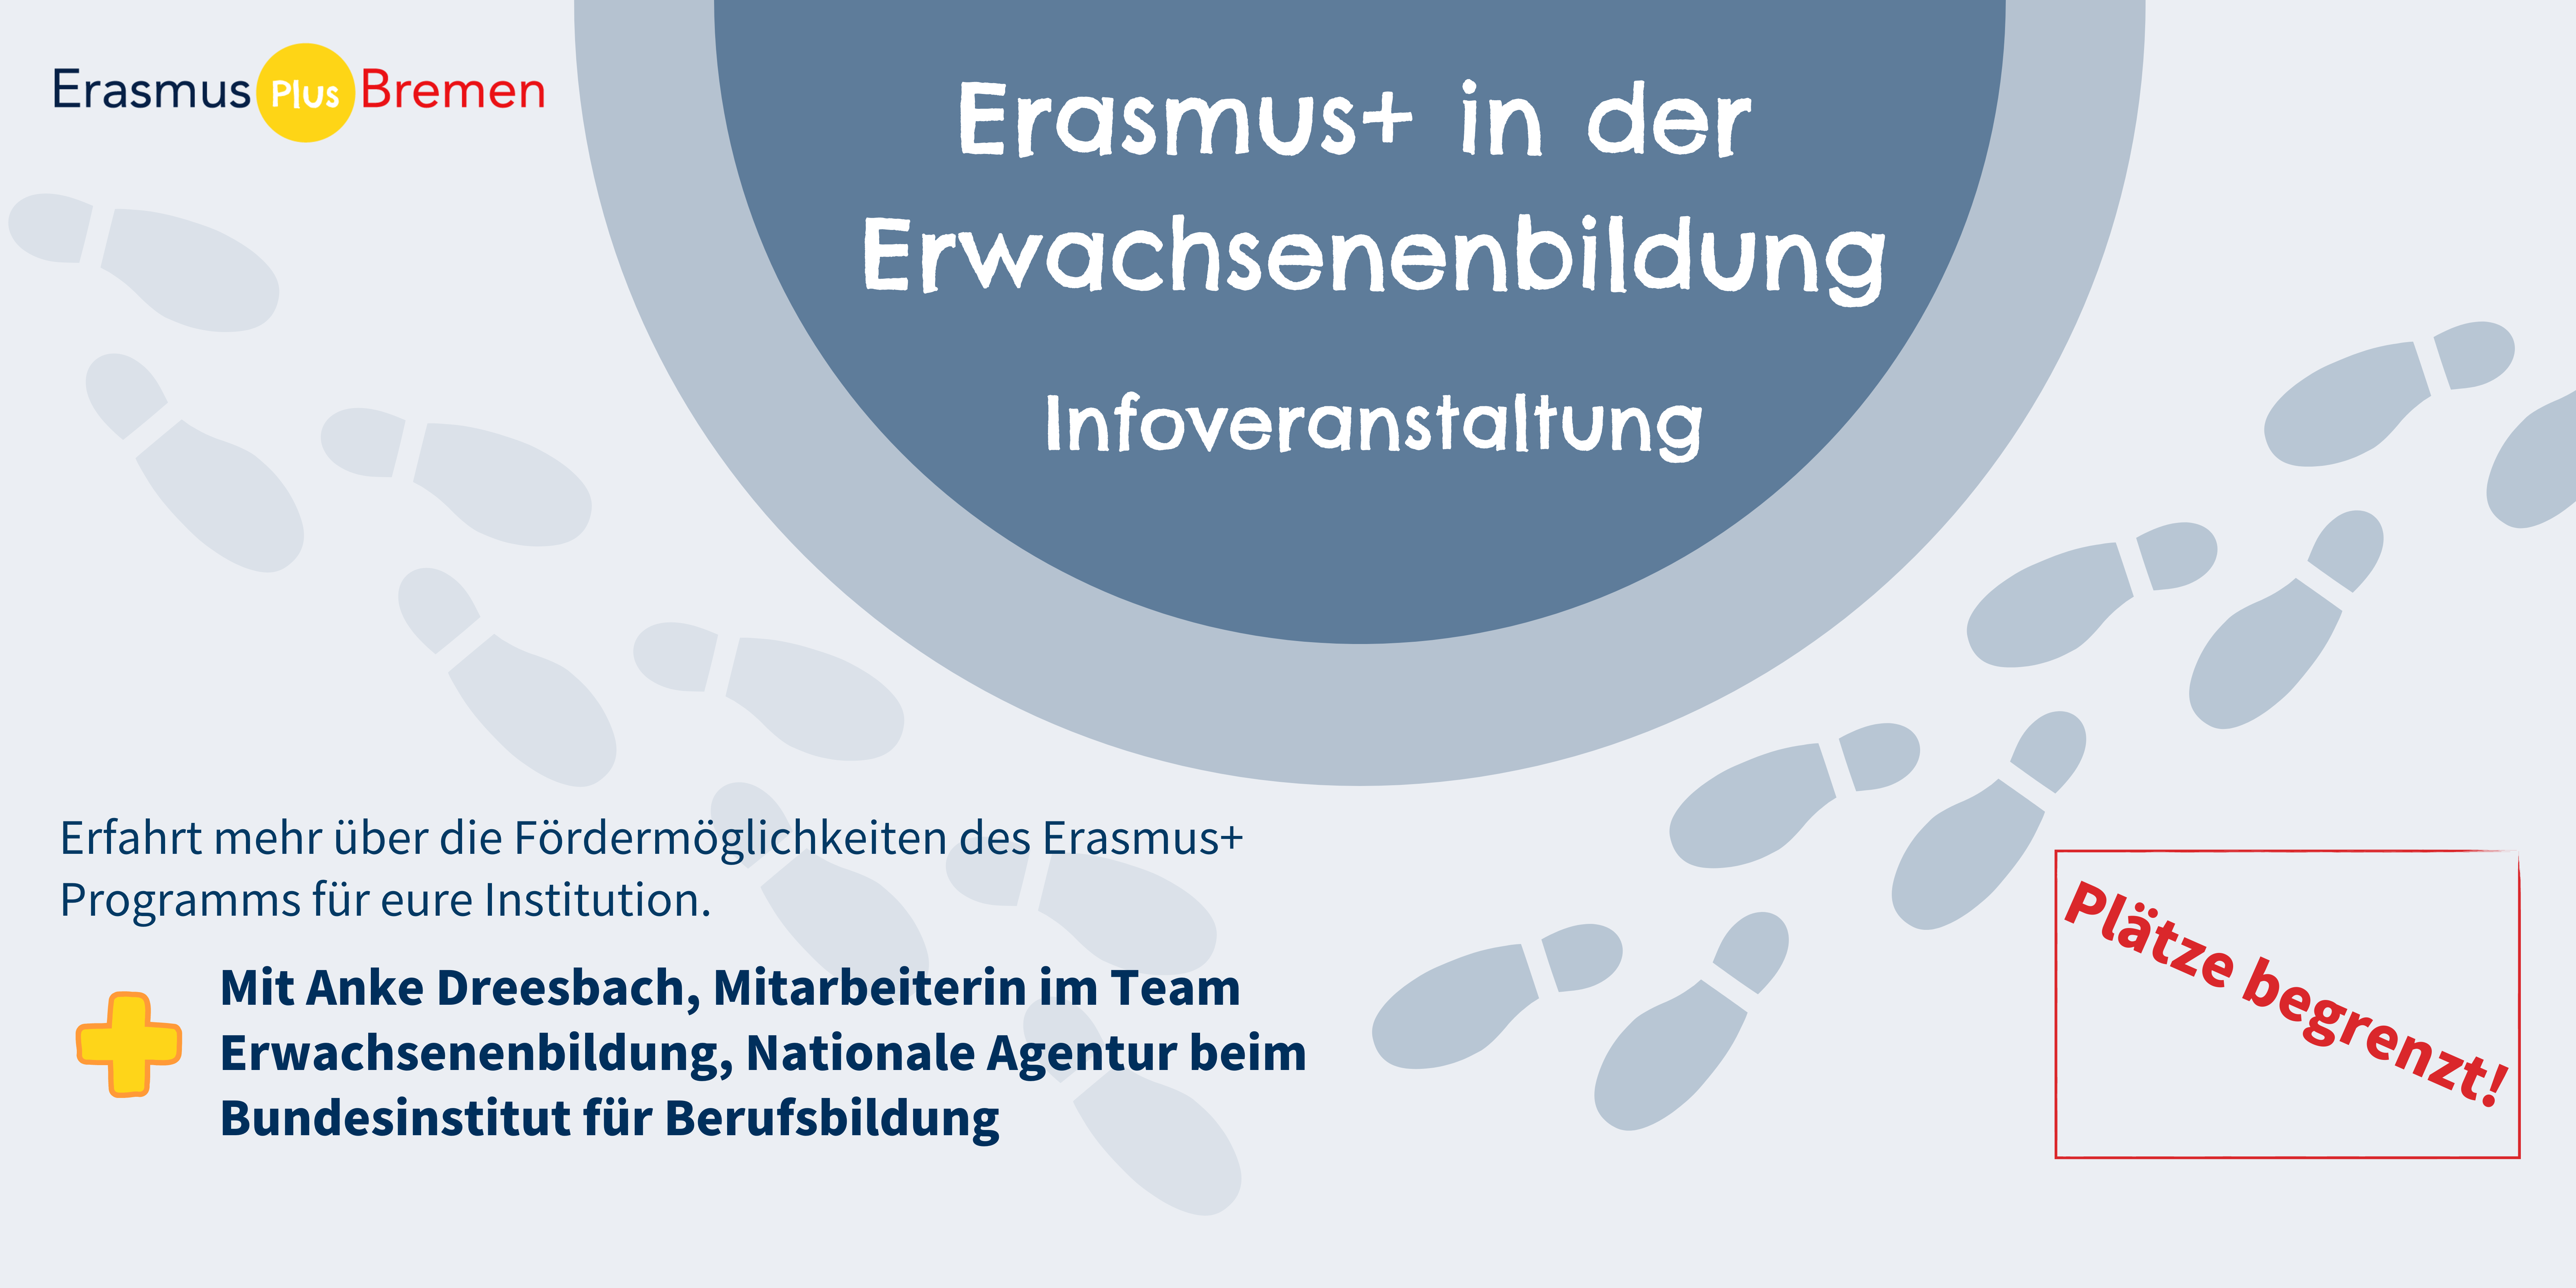 Infoveranstaltung - Erasmus+ in der Erwachsenenbildung